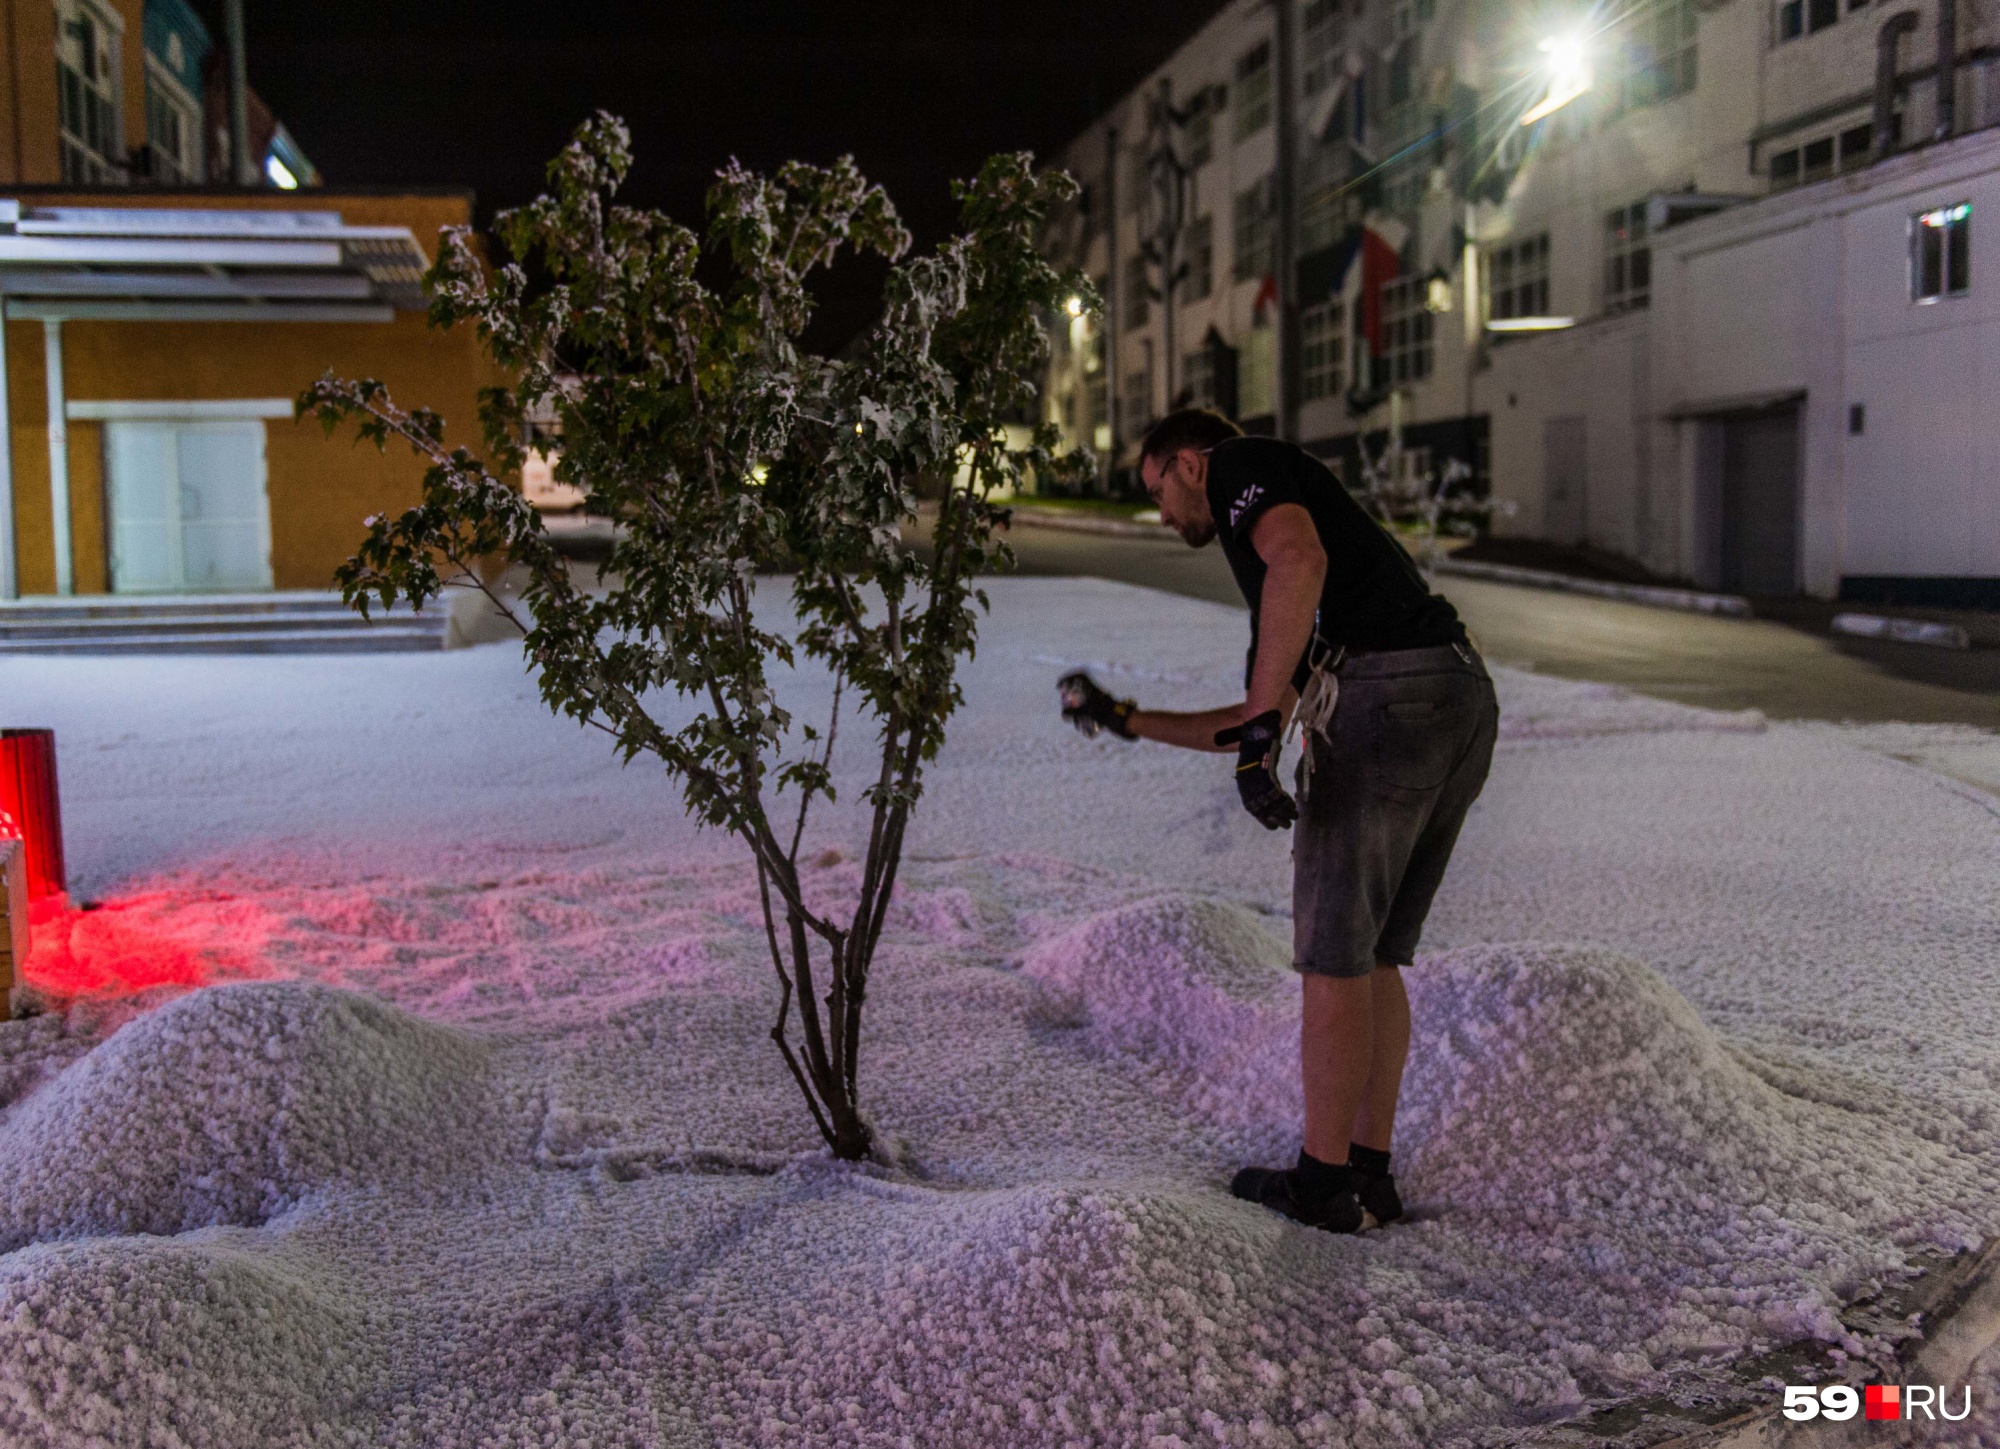 Деревья тоже покрыли искусственным снежком из баллончиков...